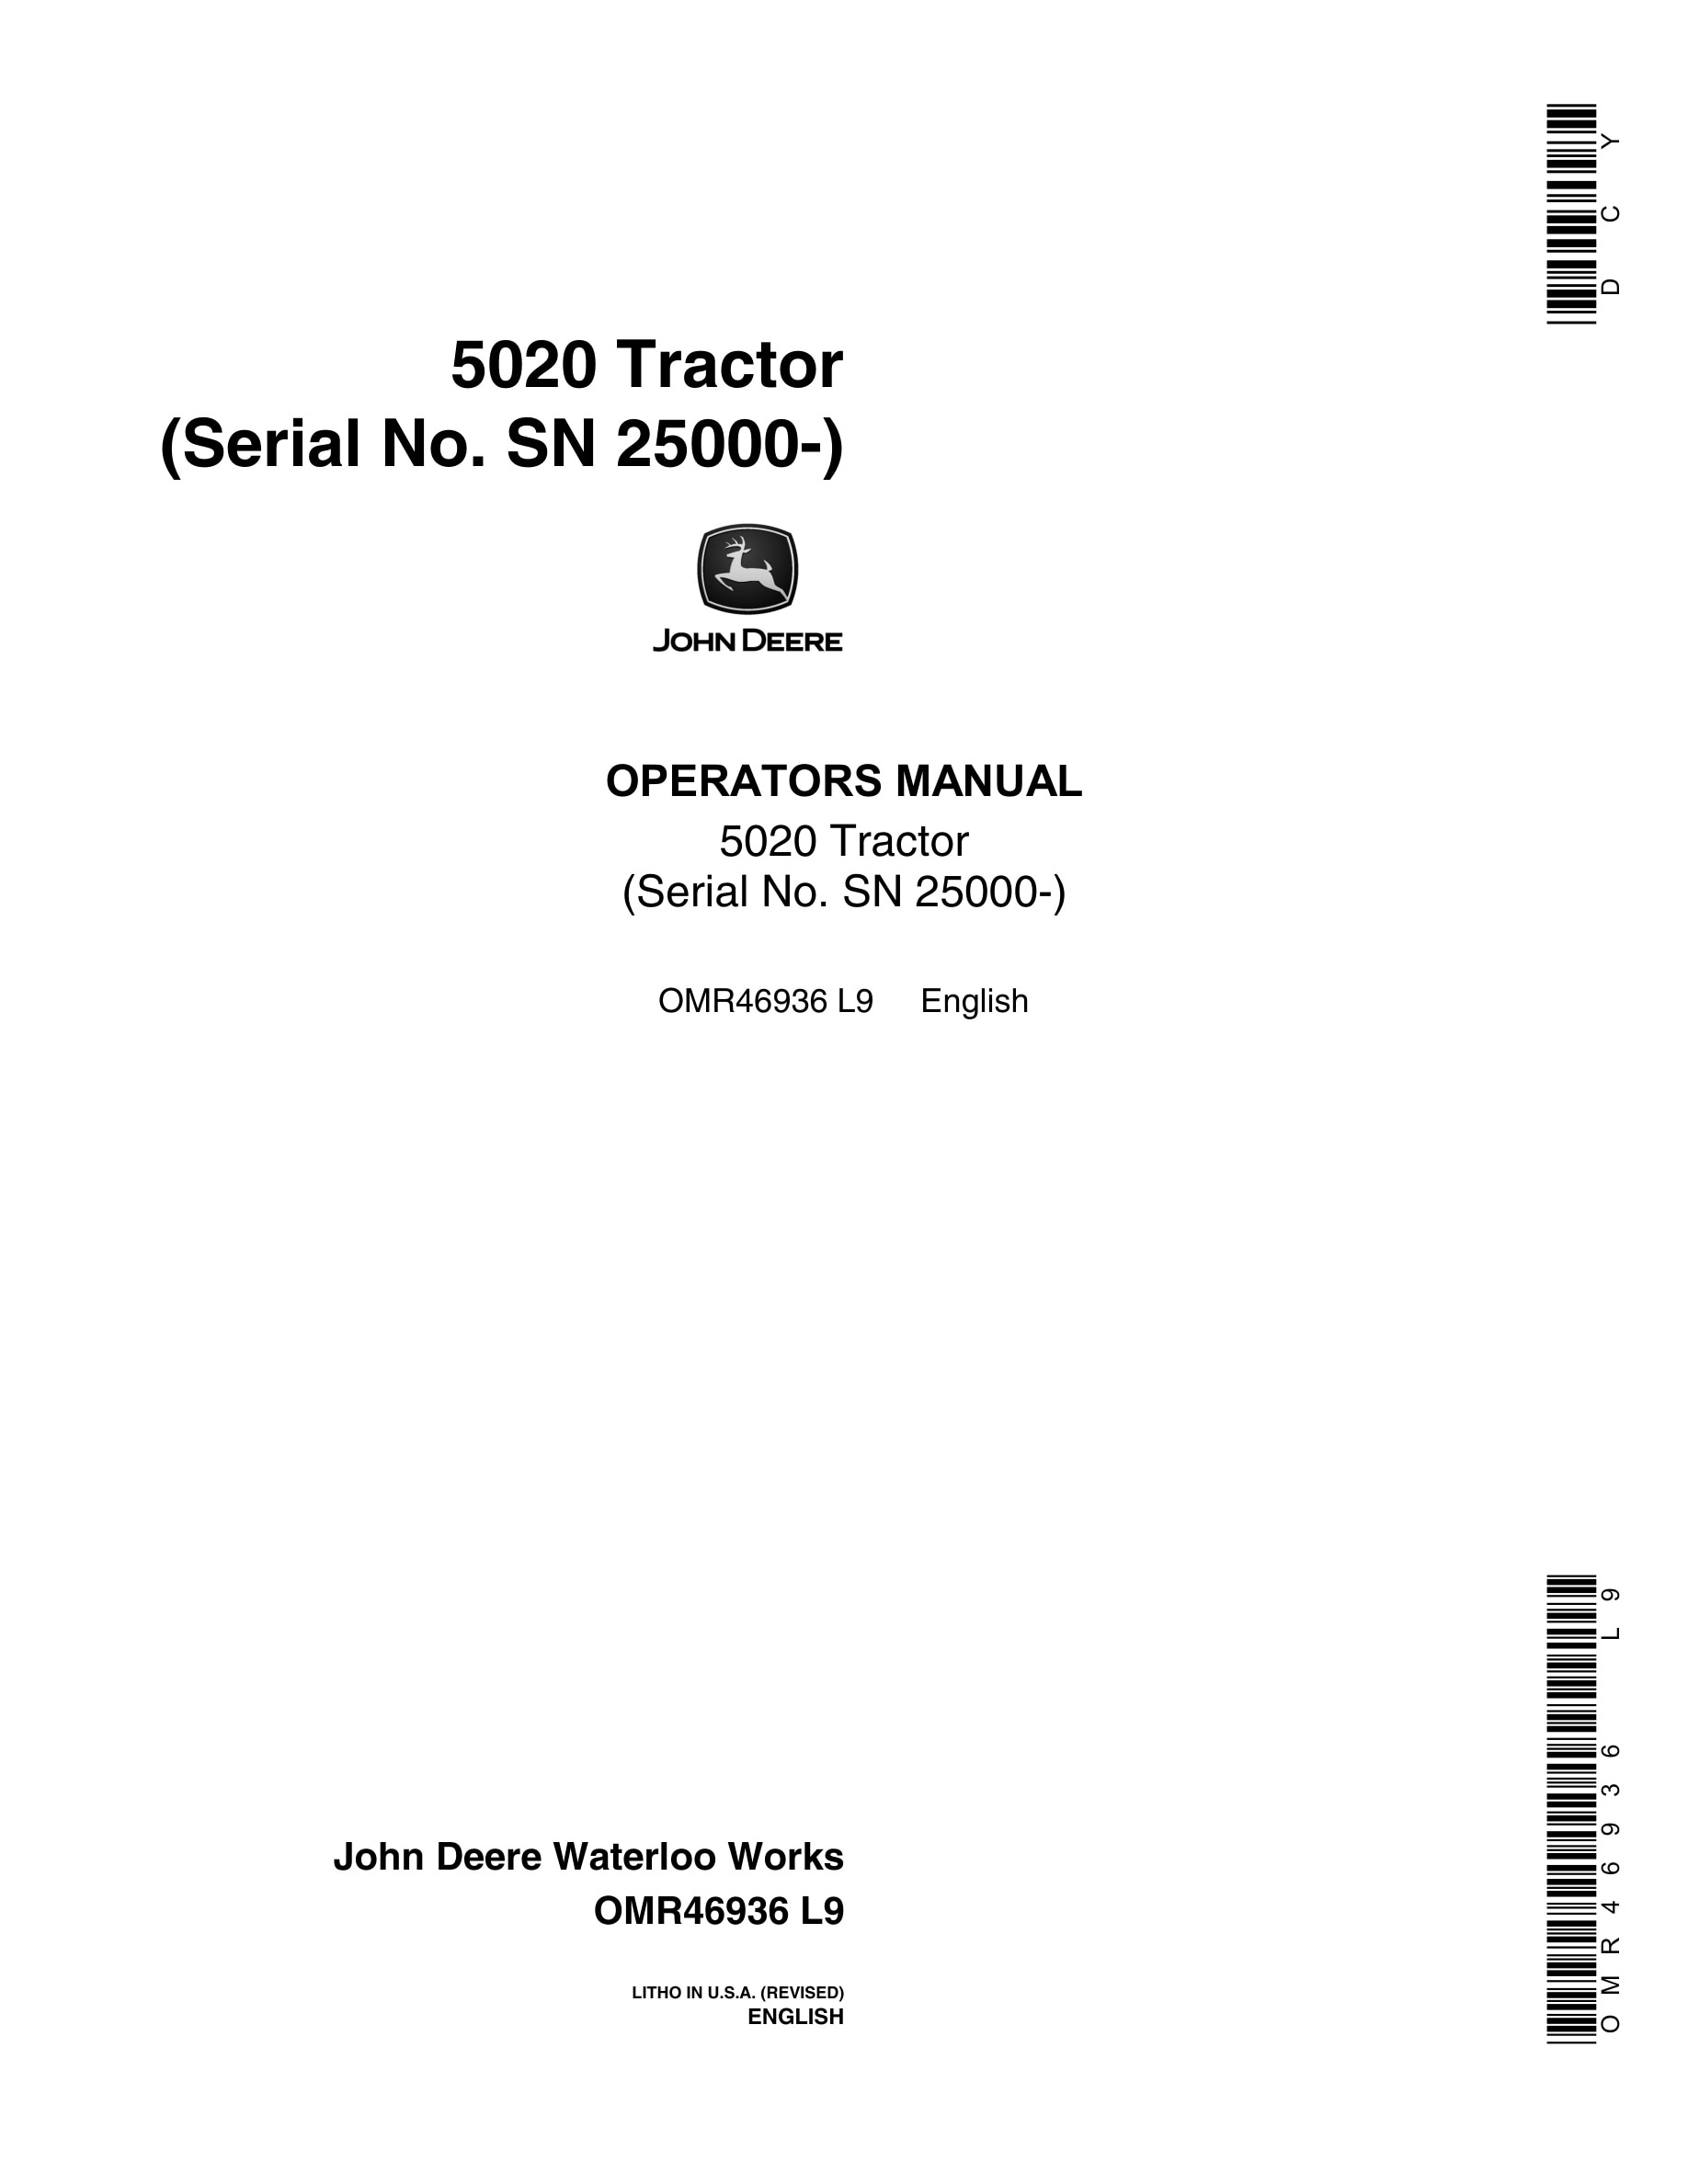 John Deere 5020 Tractor Operator Manual OMR46936-1